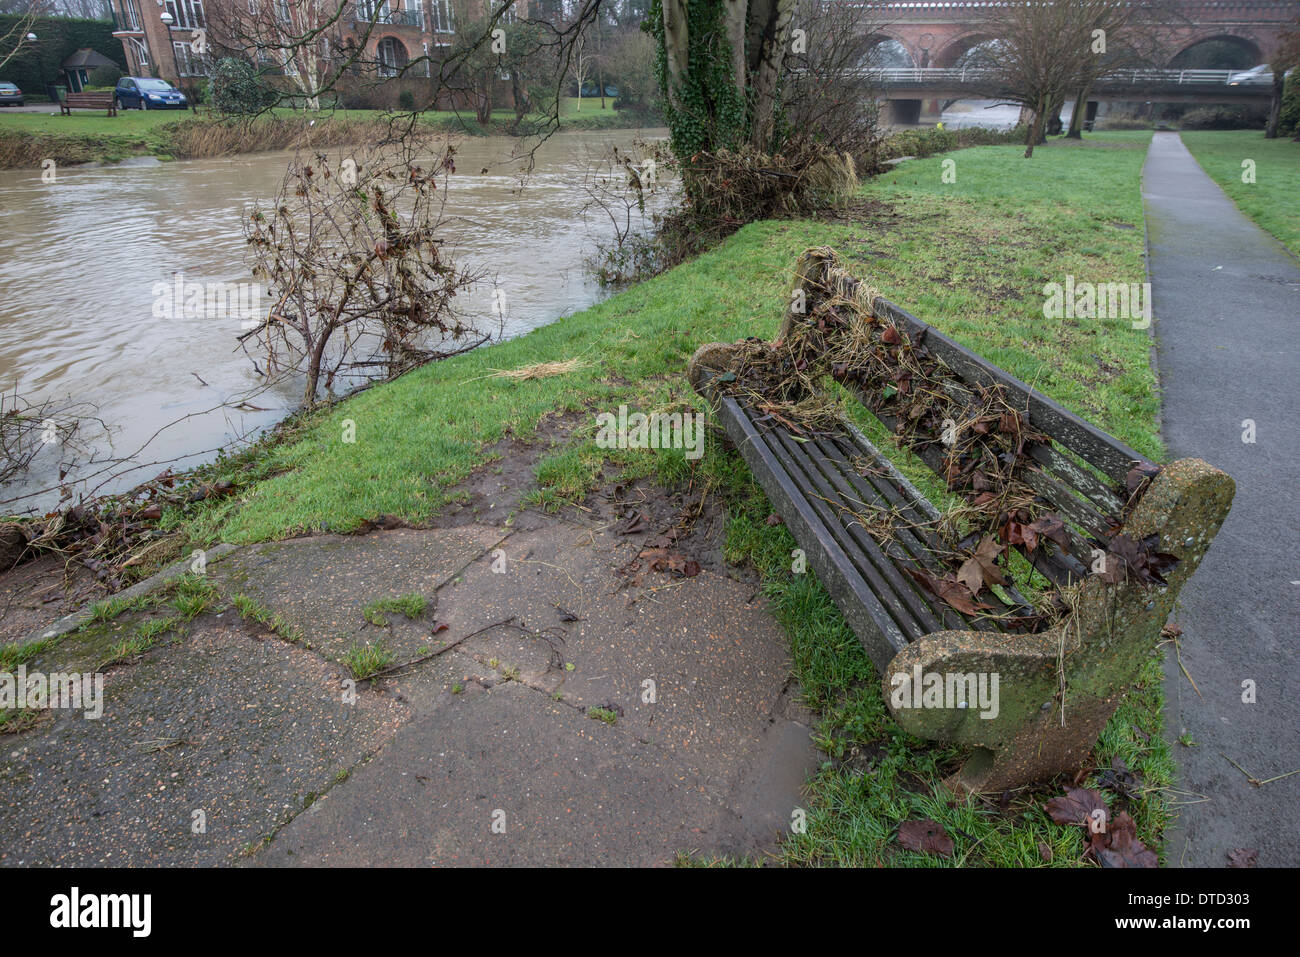 Les inondations de 2013. River Mole Surrey. Banc de parc couverte de élodée après l'inondation de la rivière Mole de casser les banques. Banque D'Images